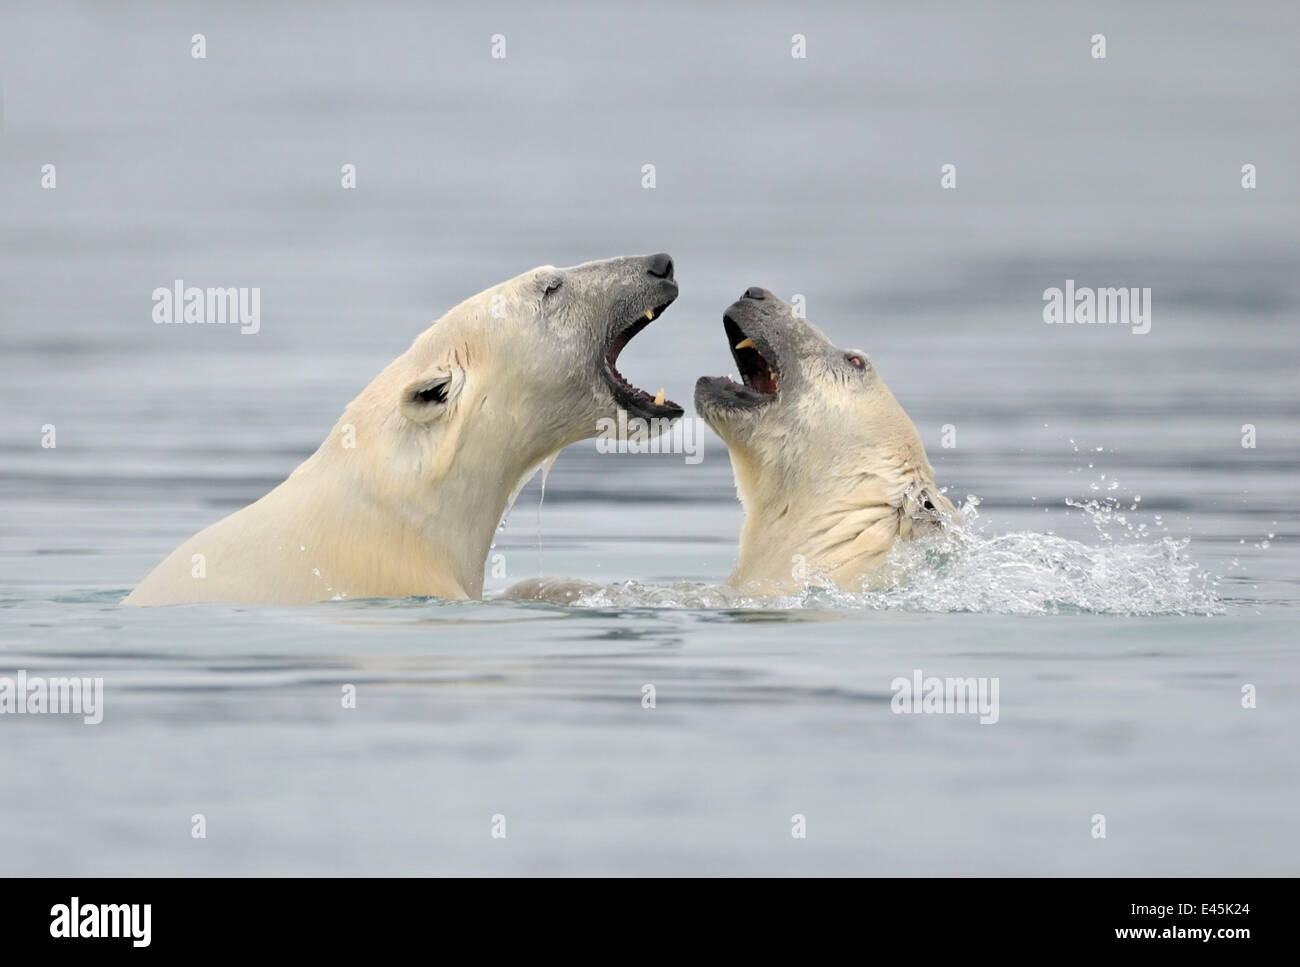 El oso polar (Ursus maritimus) madre y cub jugando en el agua, Svalbard, Noruega, septiembre de 2009 Foto de stock